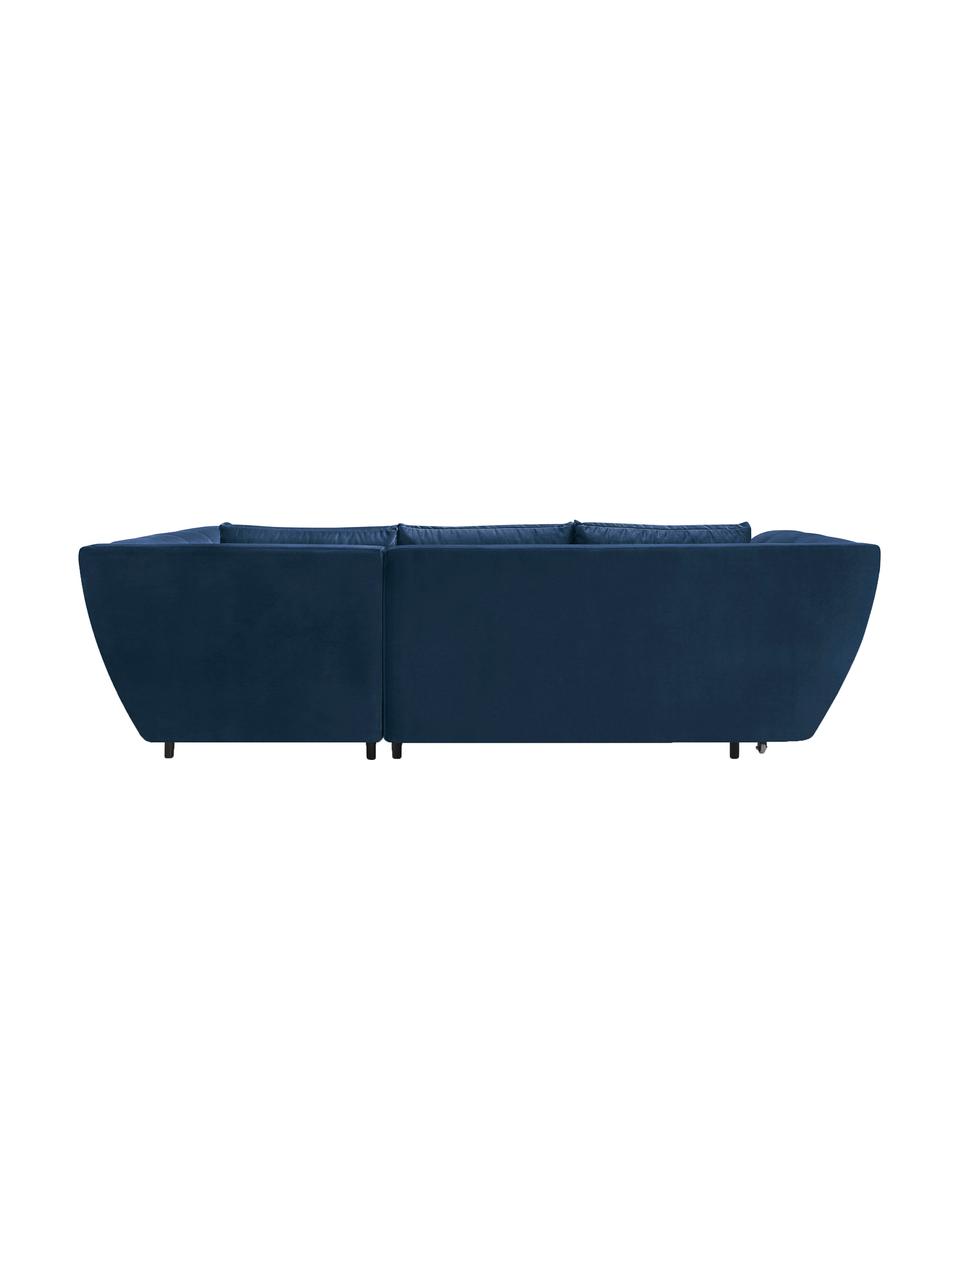 Sofa narożna z funkcją spania z aksamitu Real, Tapicerka: 100% aksamit poliestrowy, Nogi: metal lakierowany, Granatowy, S 296 x G 172 cm